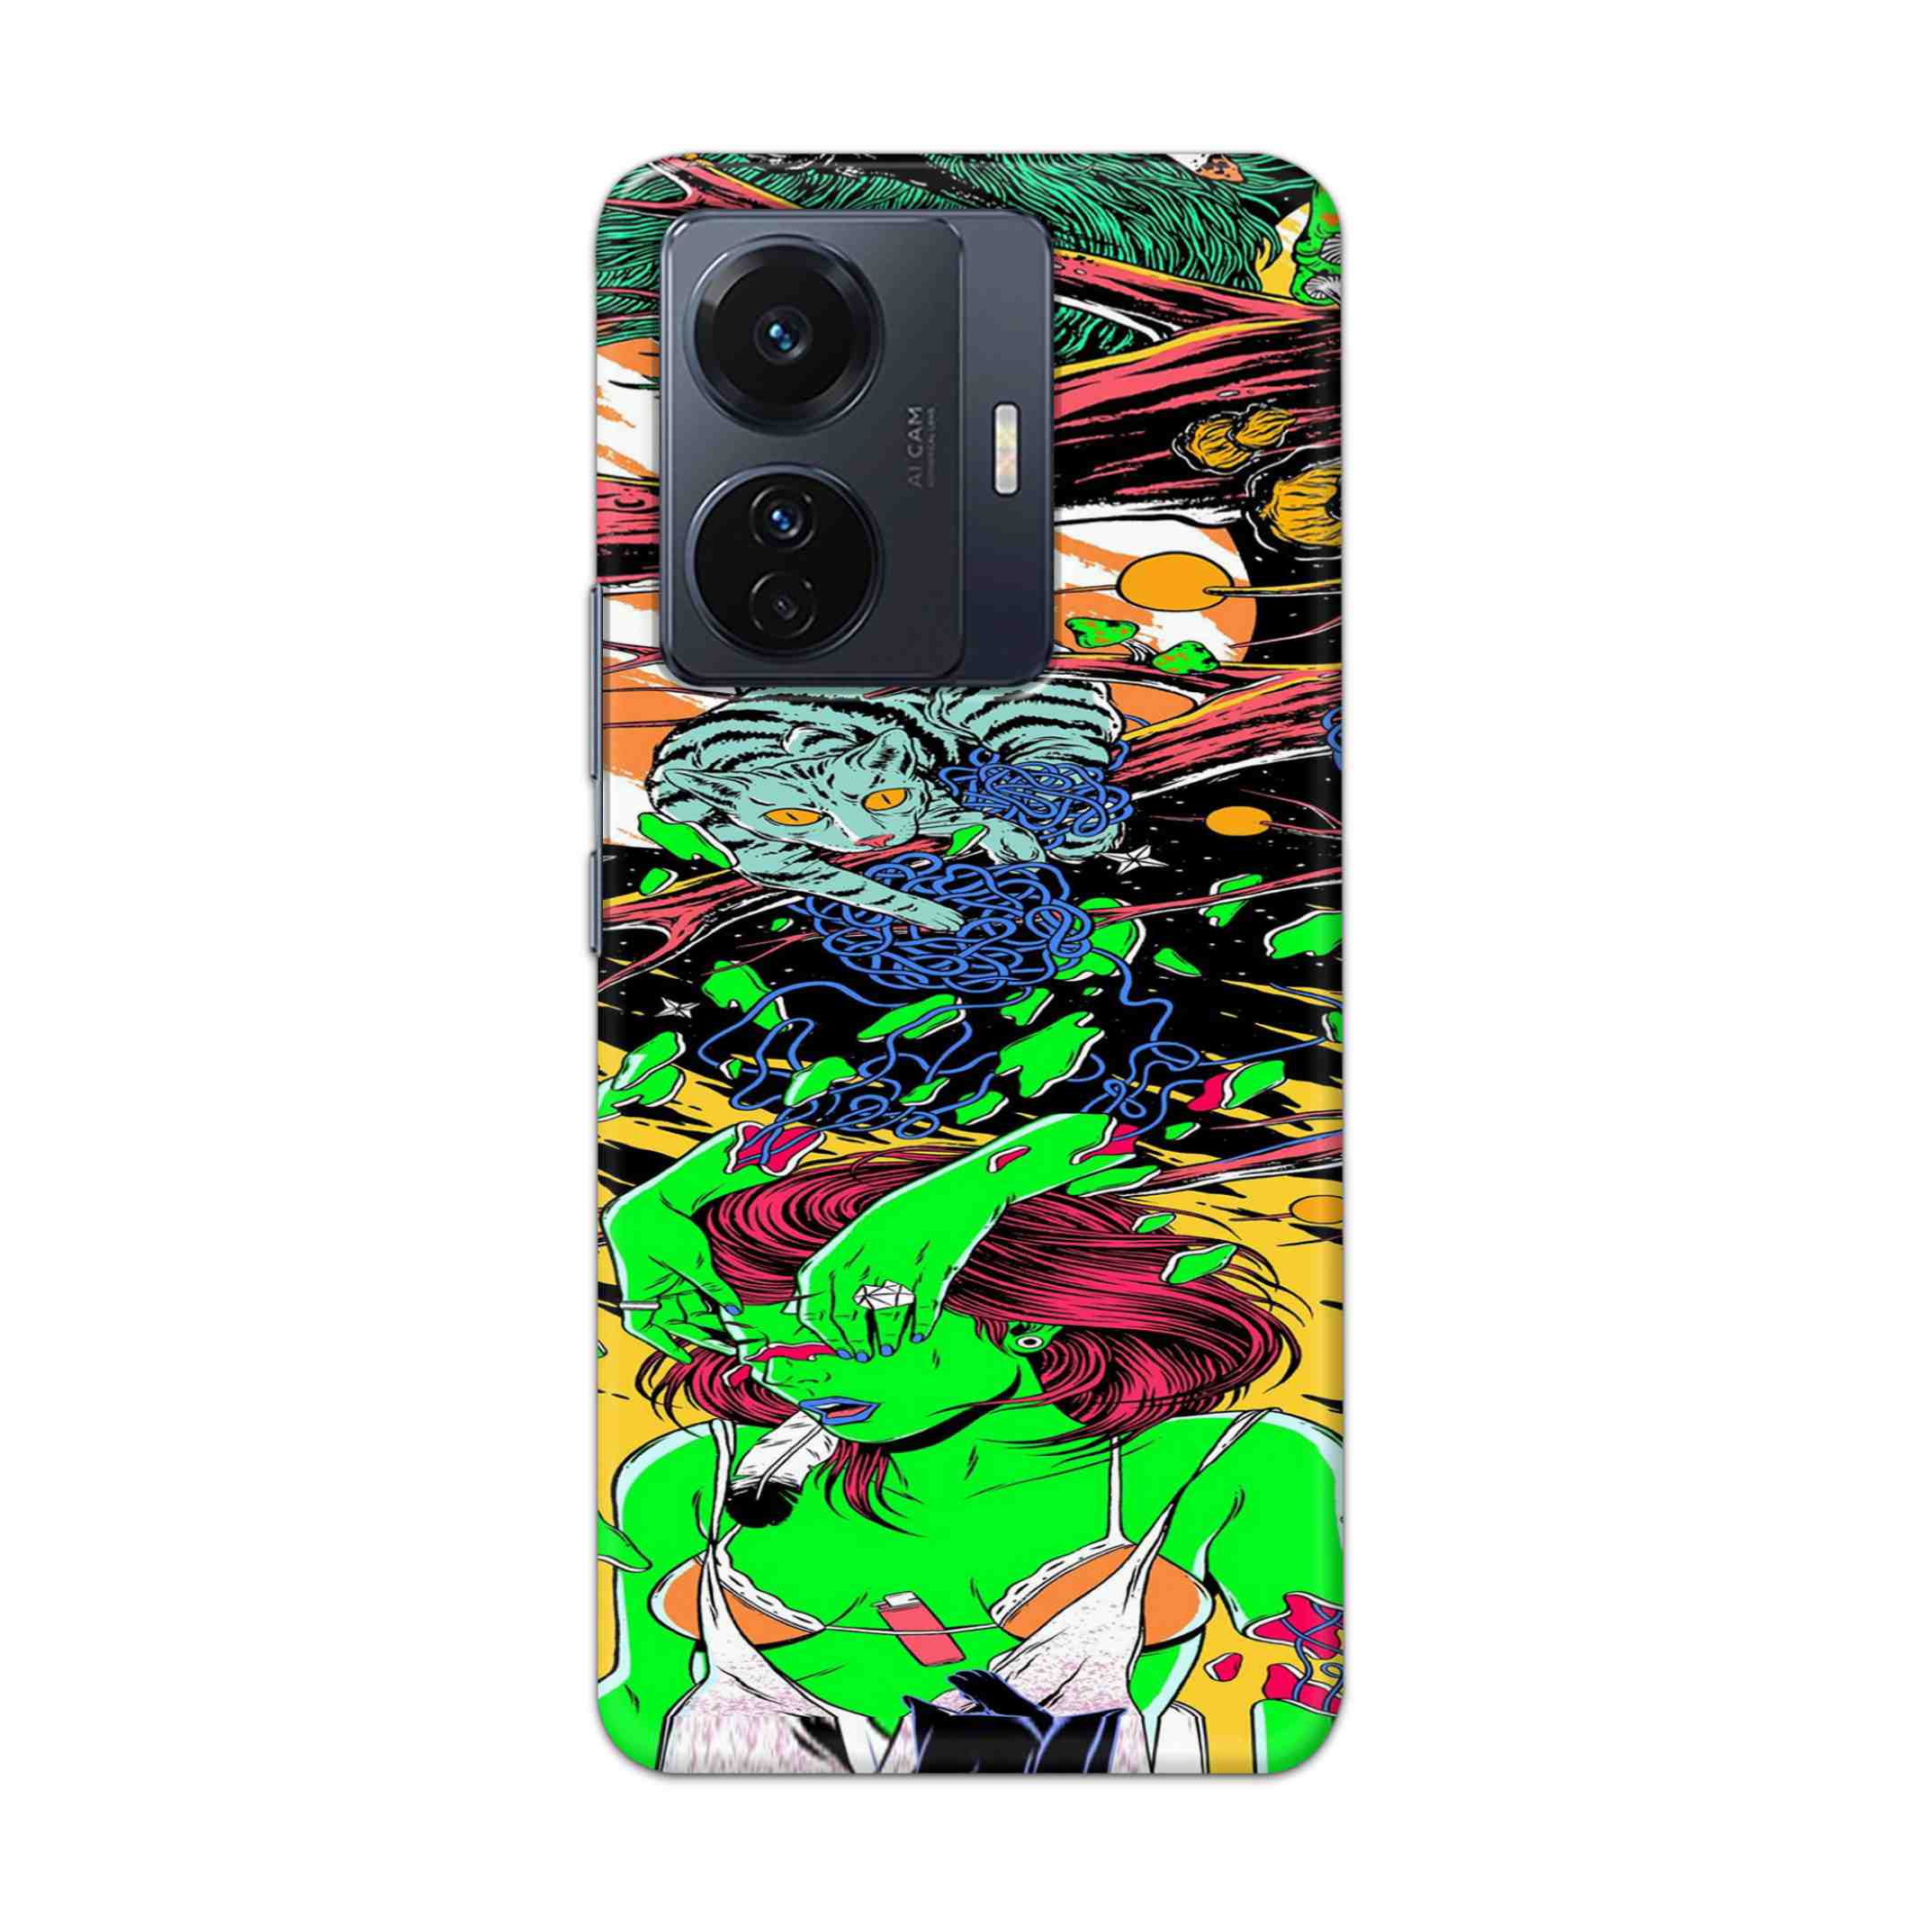 Buy Green Girl Art Hard Back Mobile Phone Case Cover For Vivo T1 Pro 5G Online